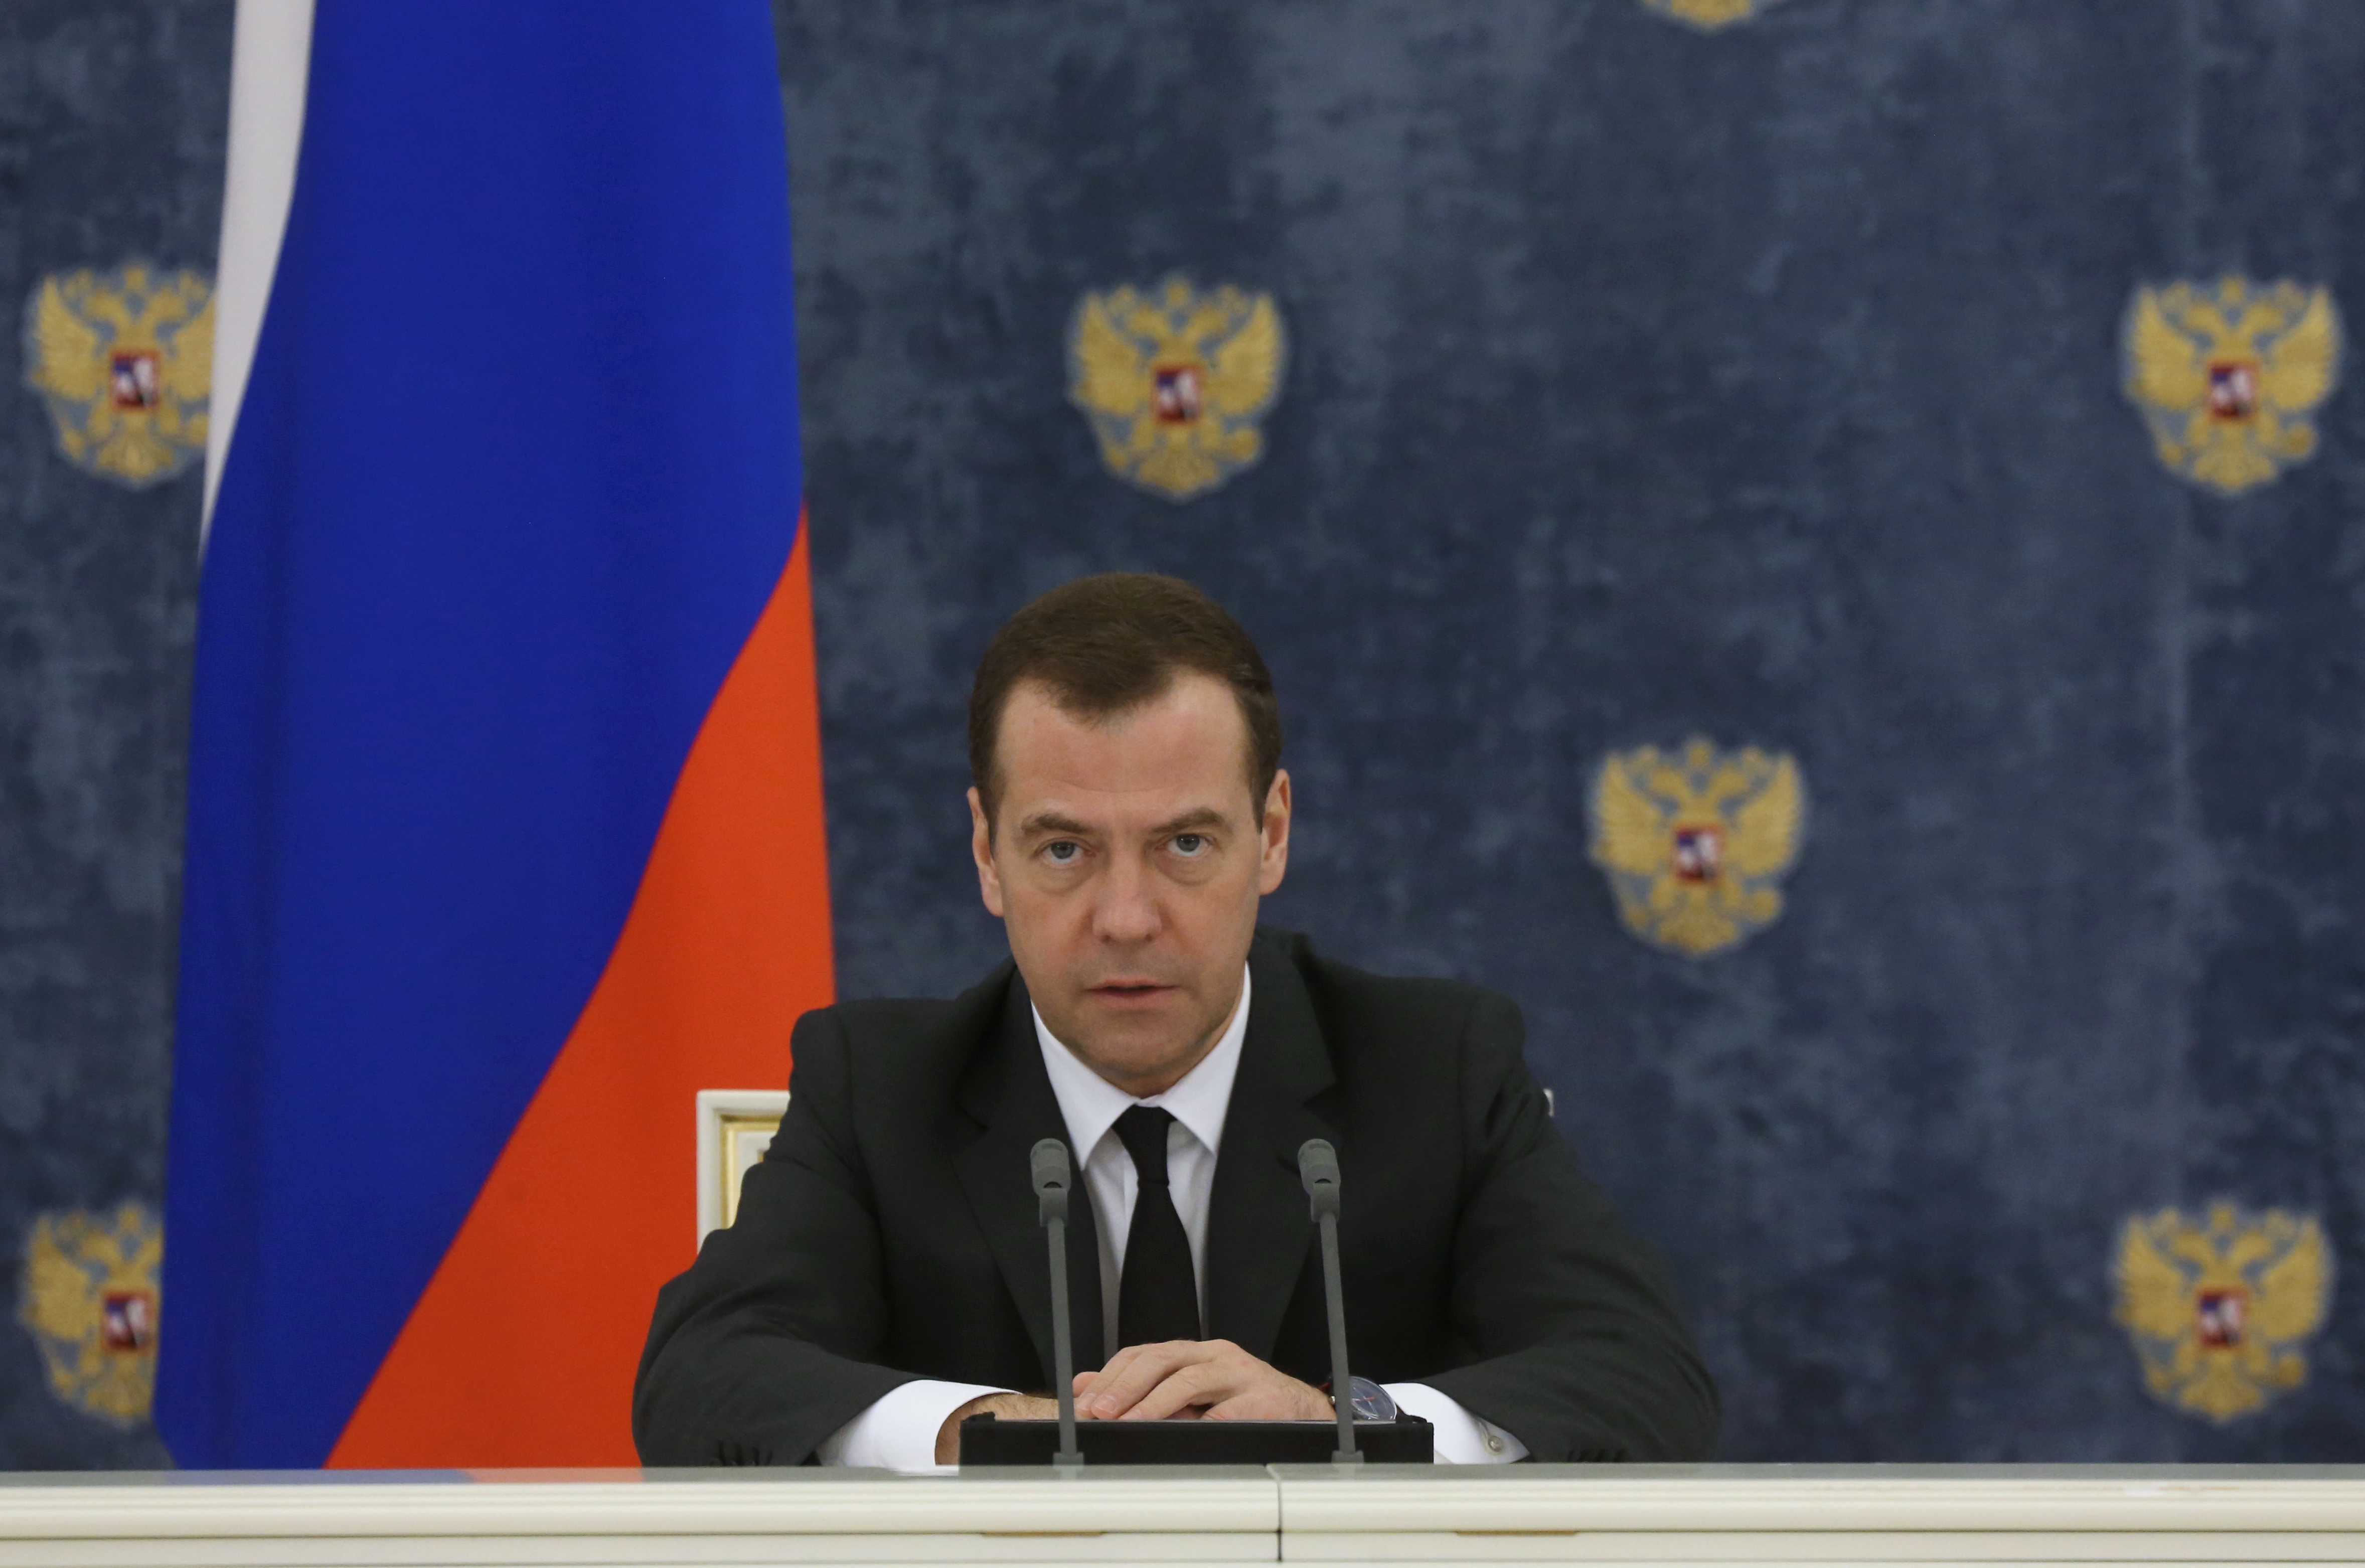 Dmitry Medvedev seen at the Moscow suburban residence "Gorki", on Feb. 11, 2016. (Ekaterina Shtukina—AP)